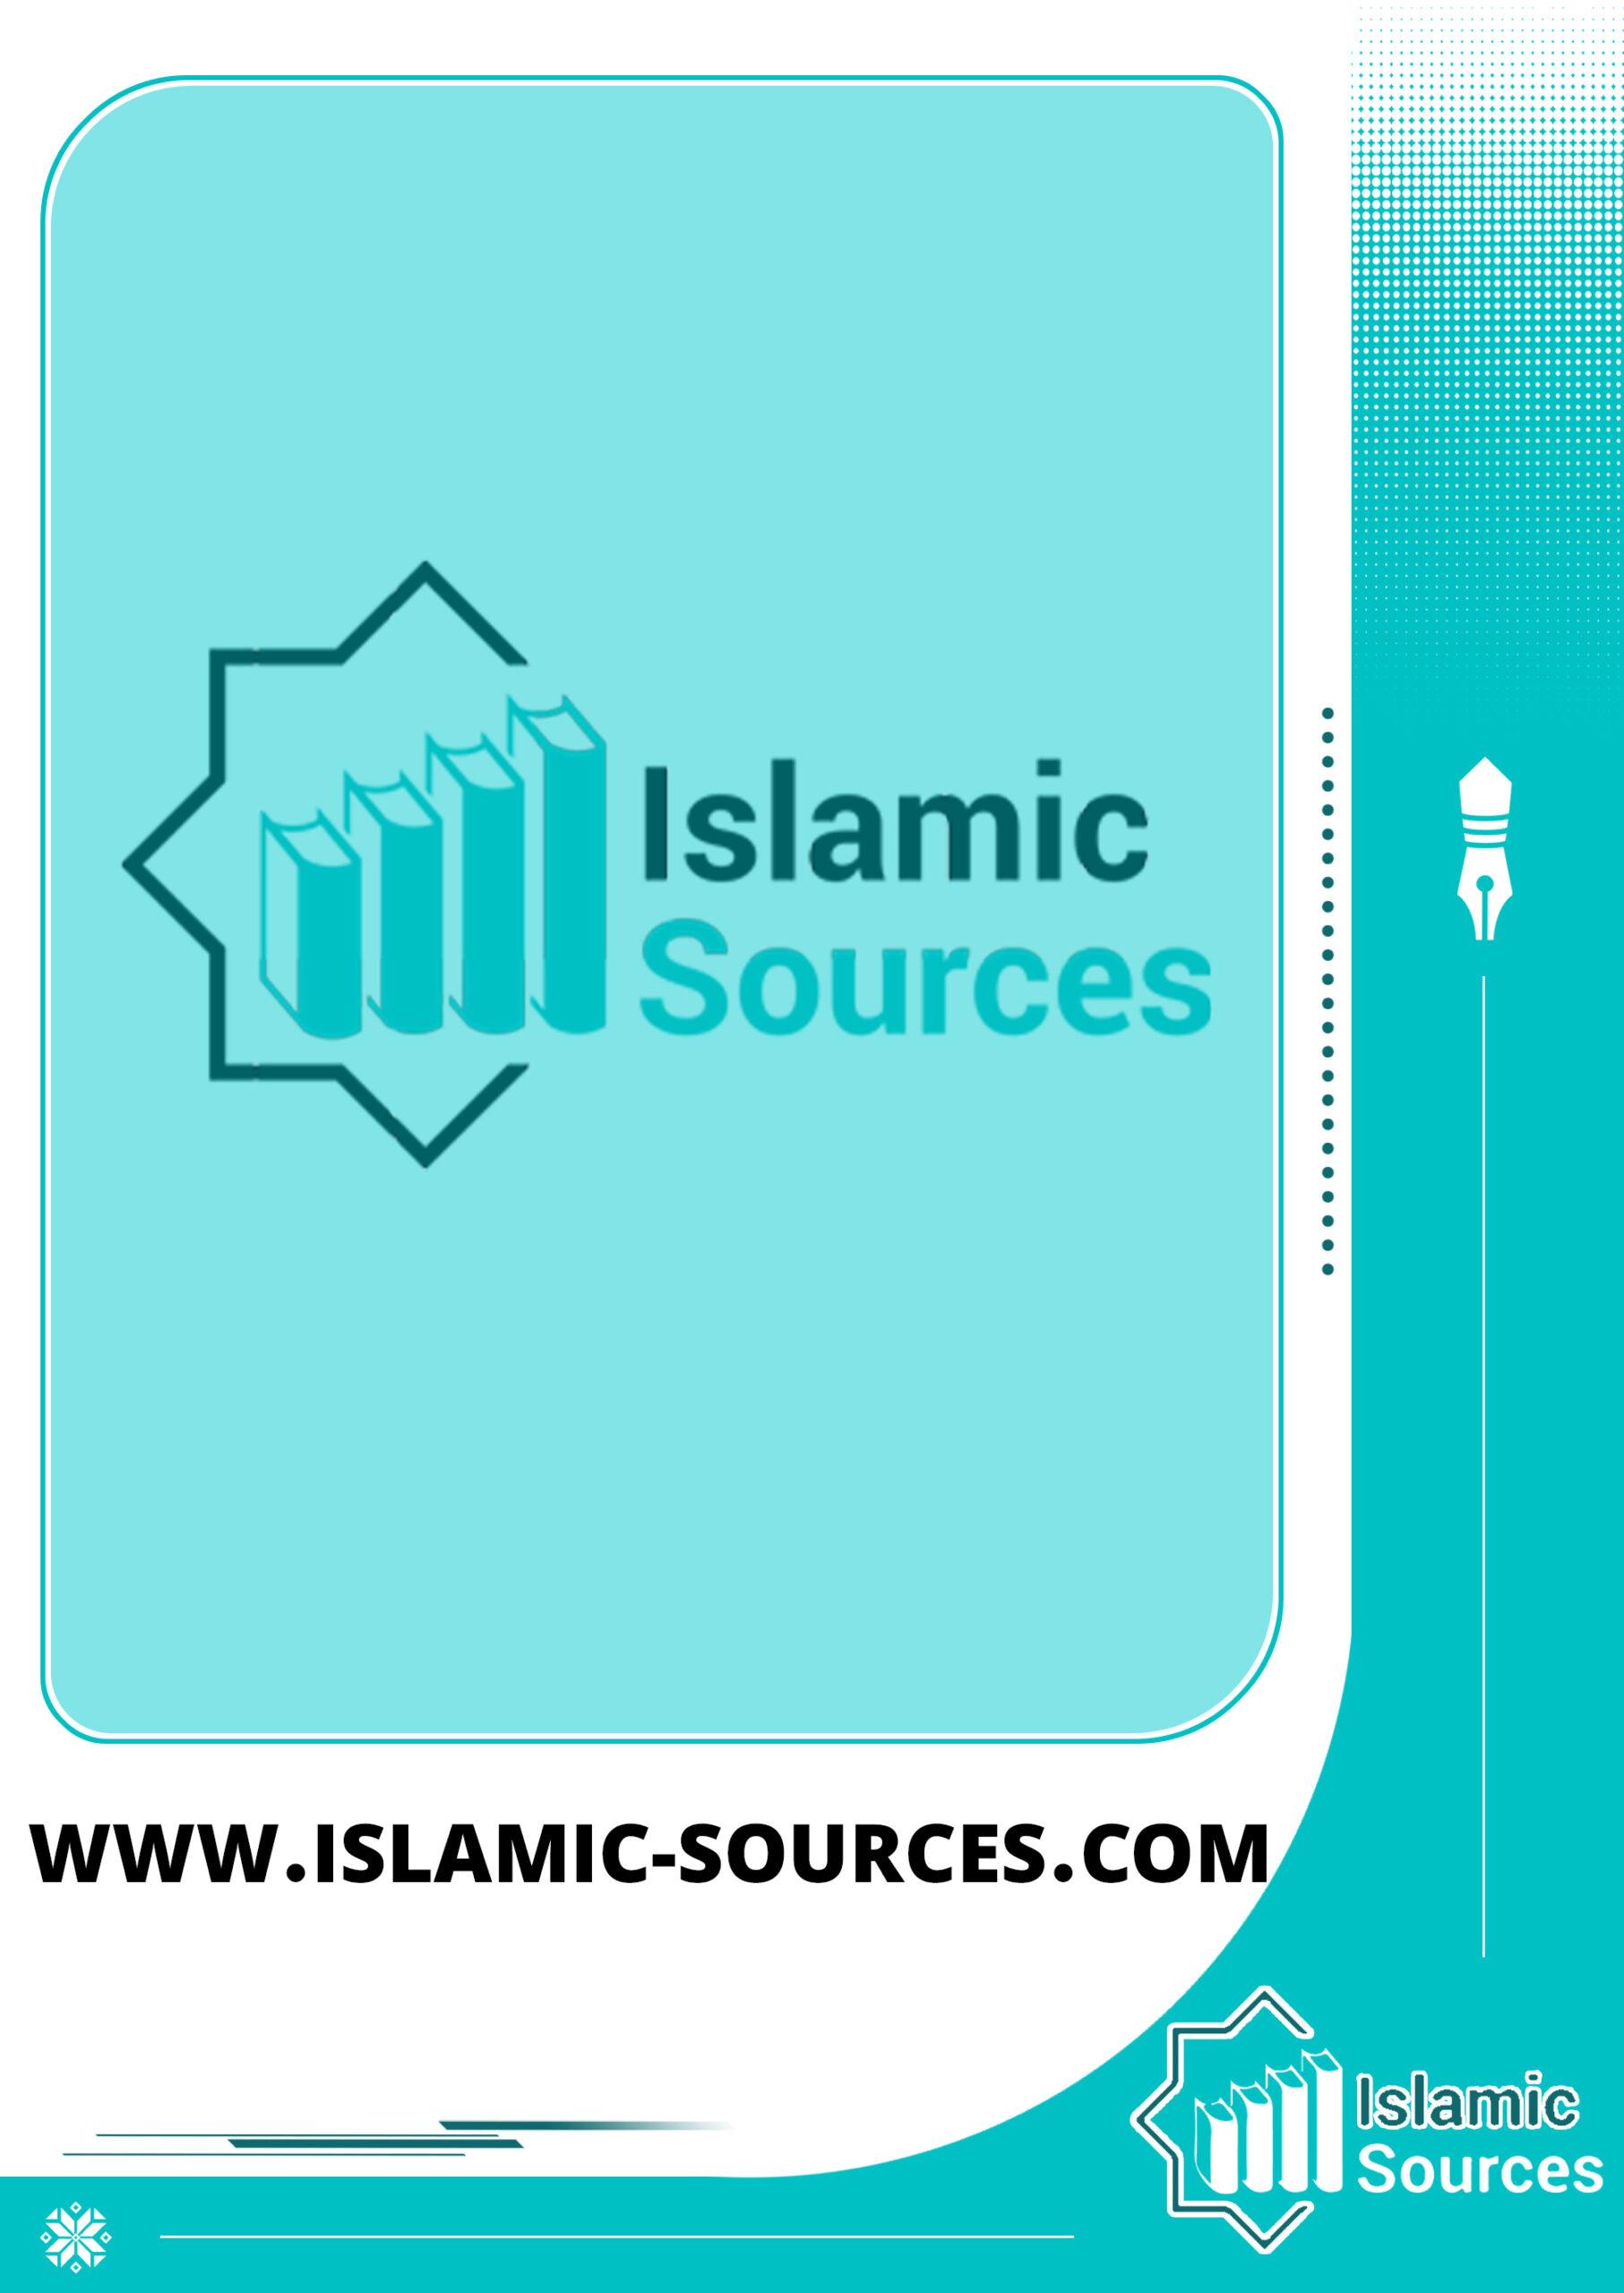 www.islamic-sources.com